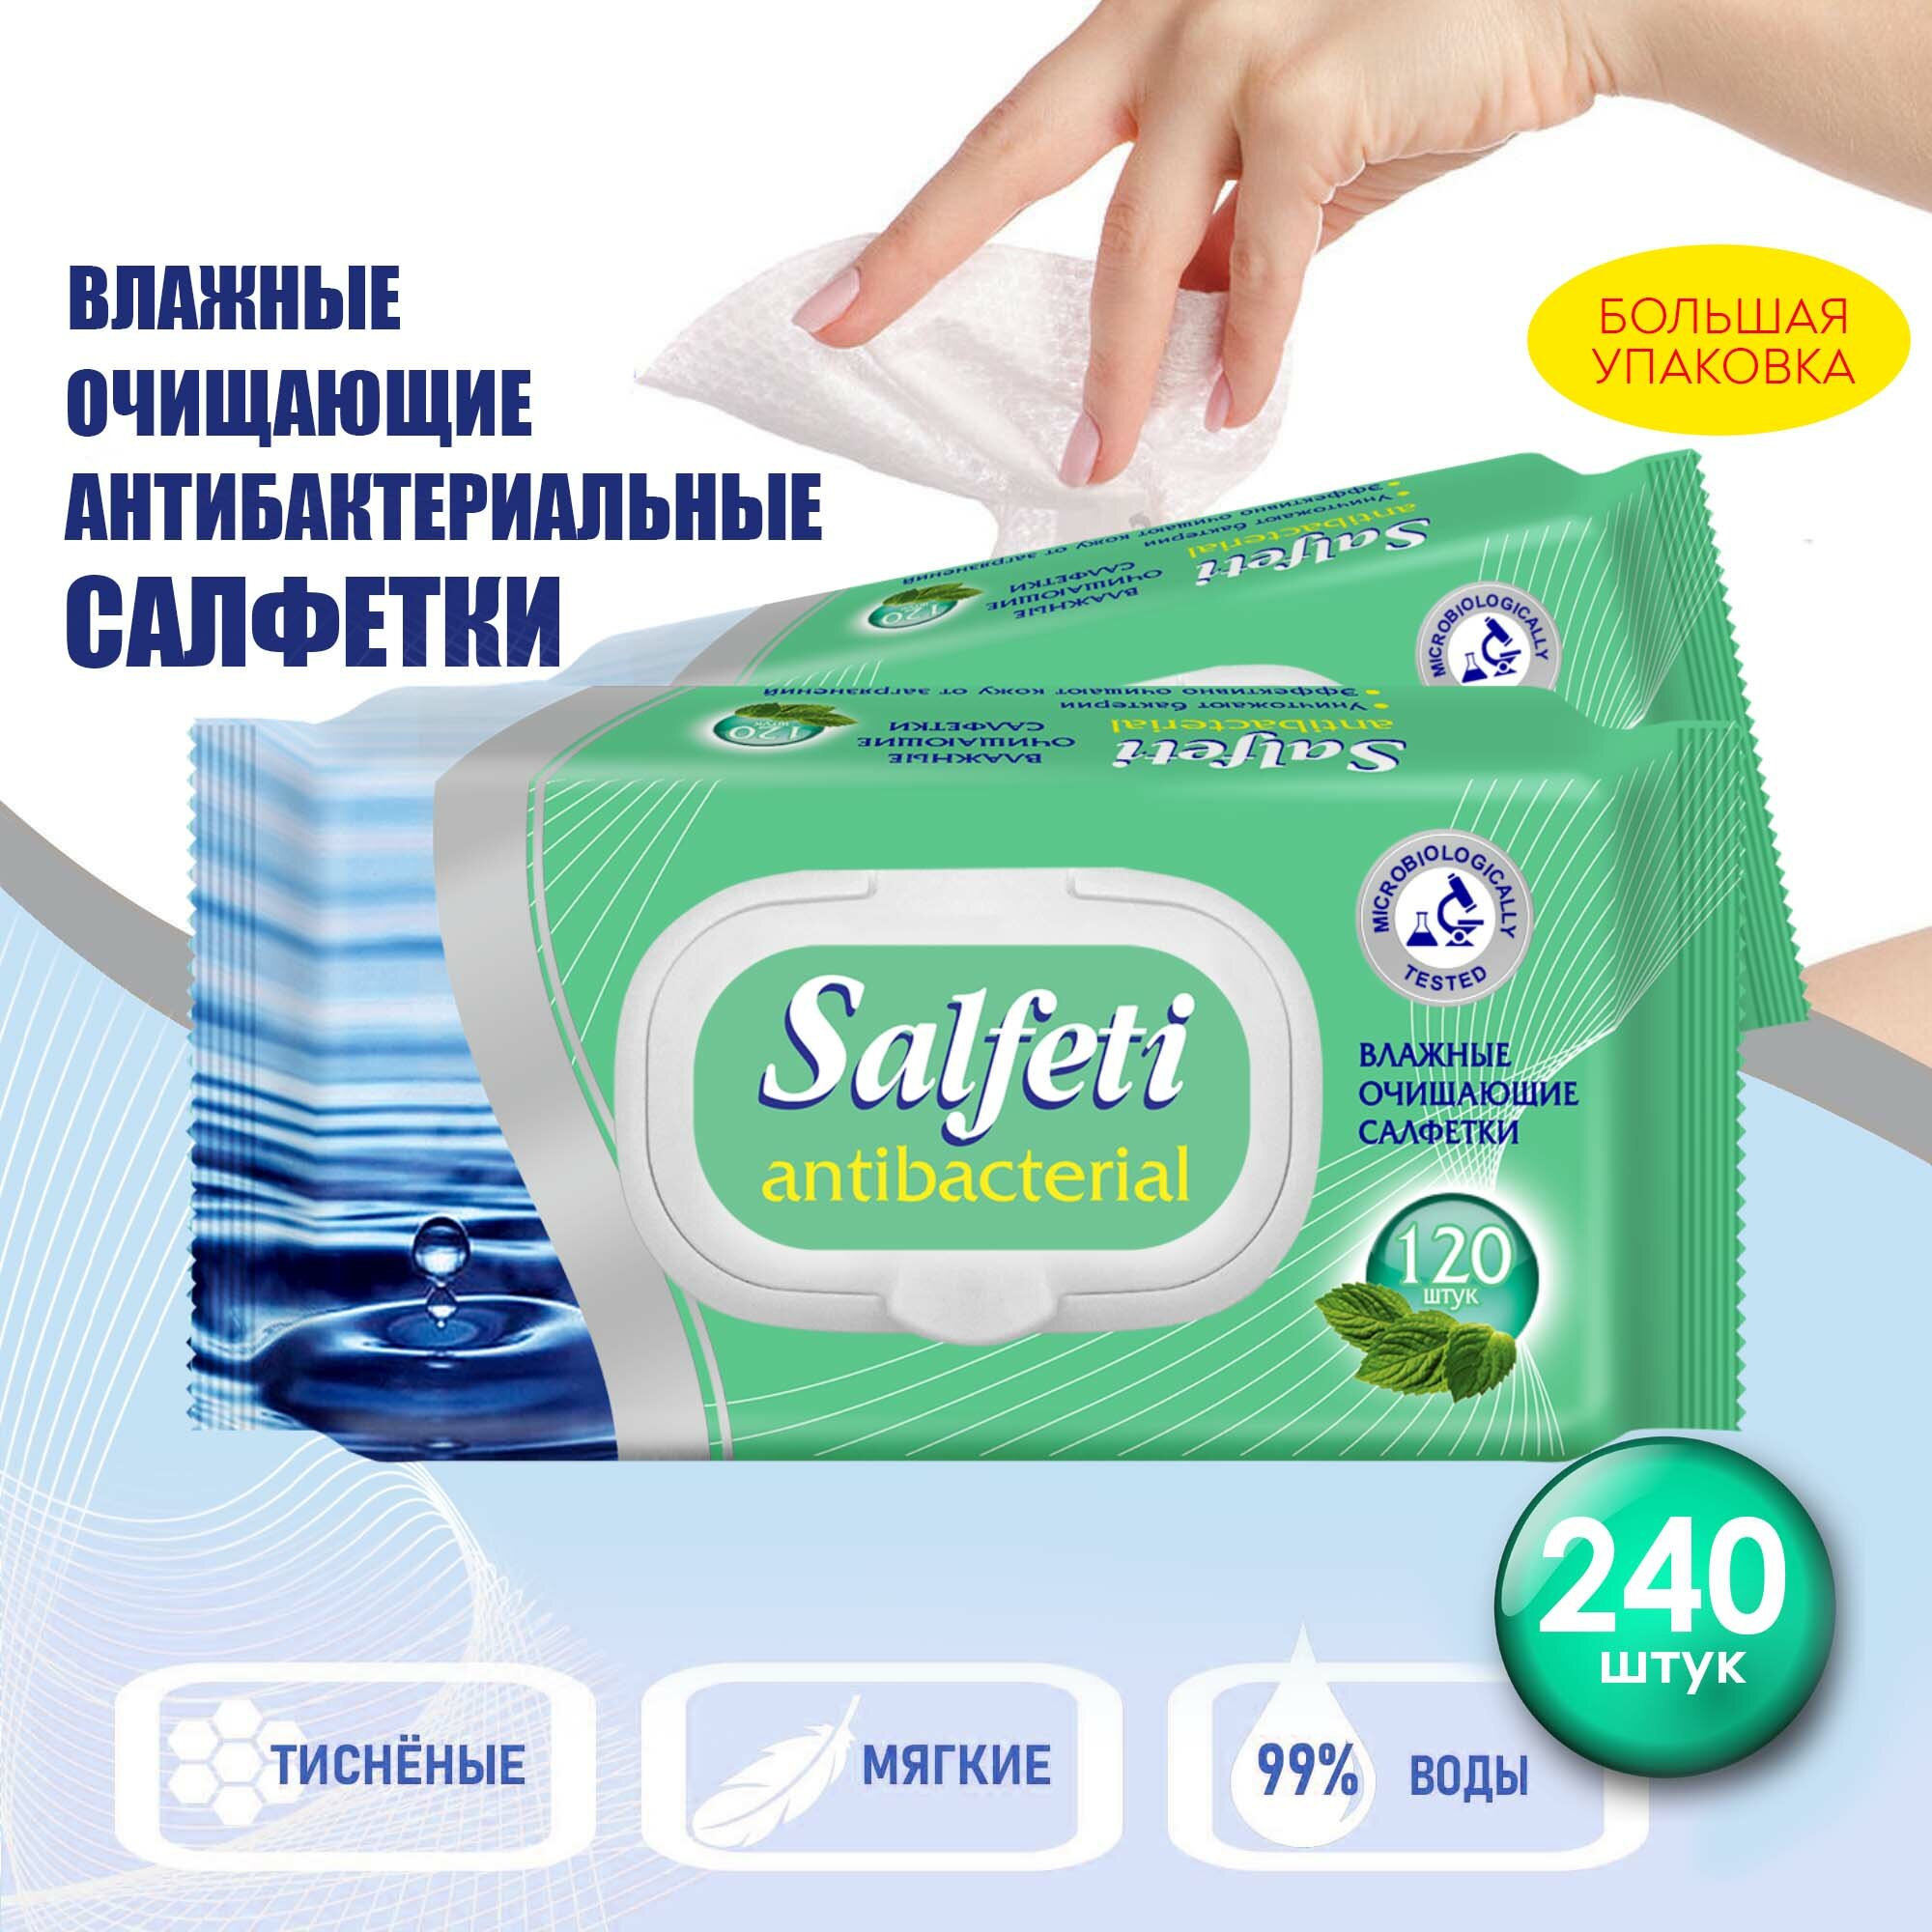 Салфетки влажные Salfeti Antibacterial очищающие, антибактериальные , с клапаном, 2 уп. по 120 шт.